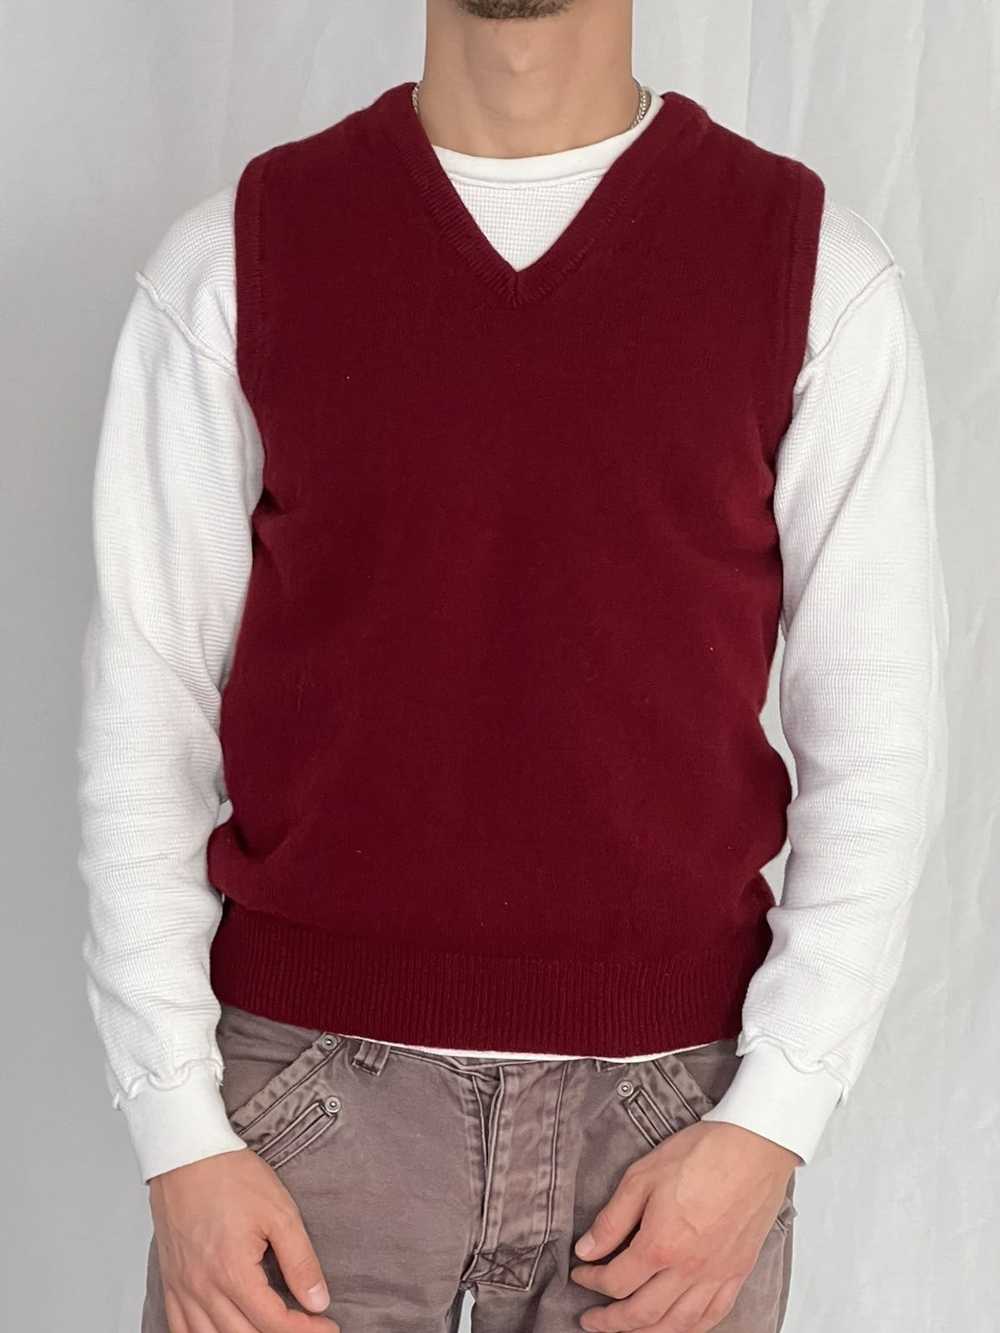 Golf Wang × Vintage VTG Wool Burgundy Sweater Vest - image 1